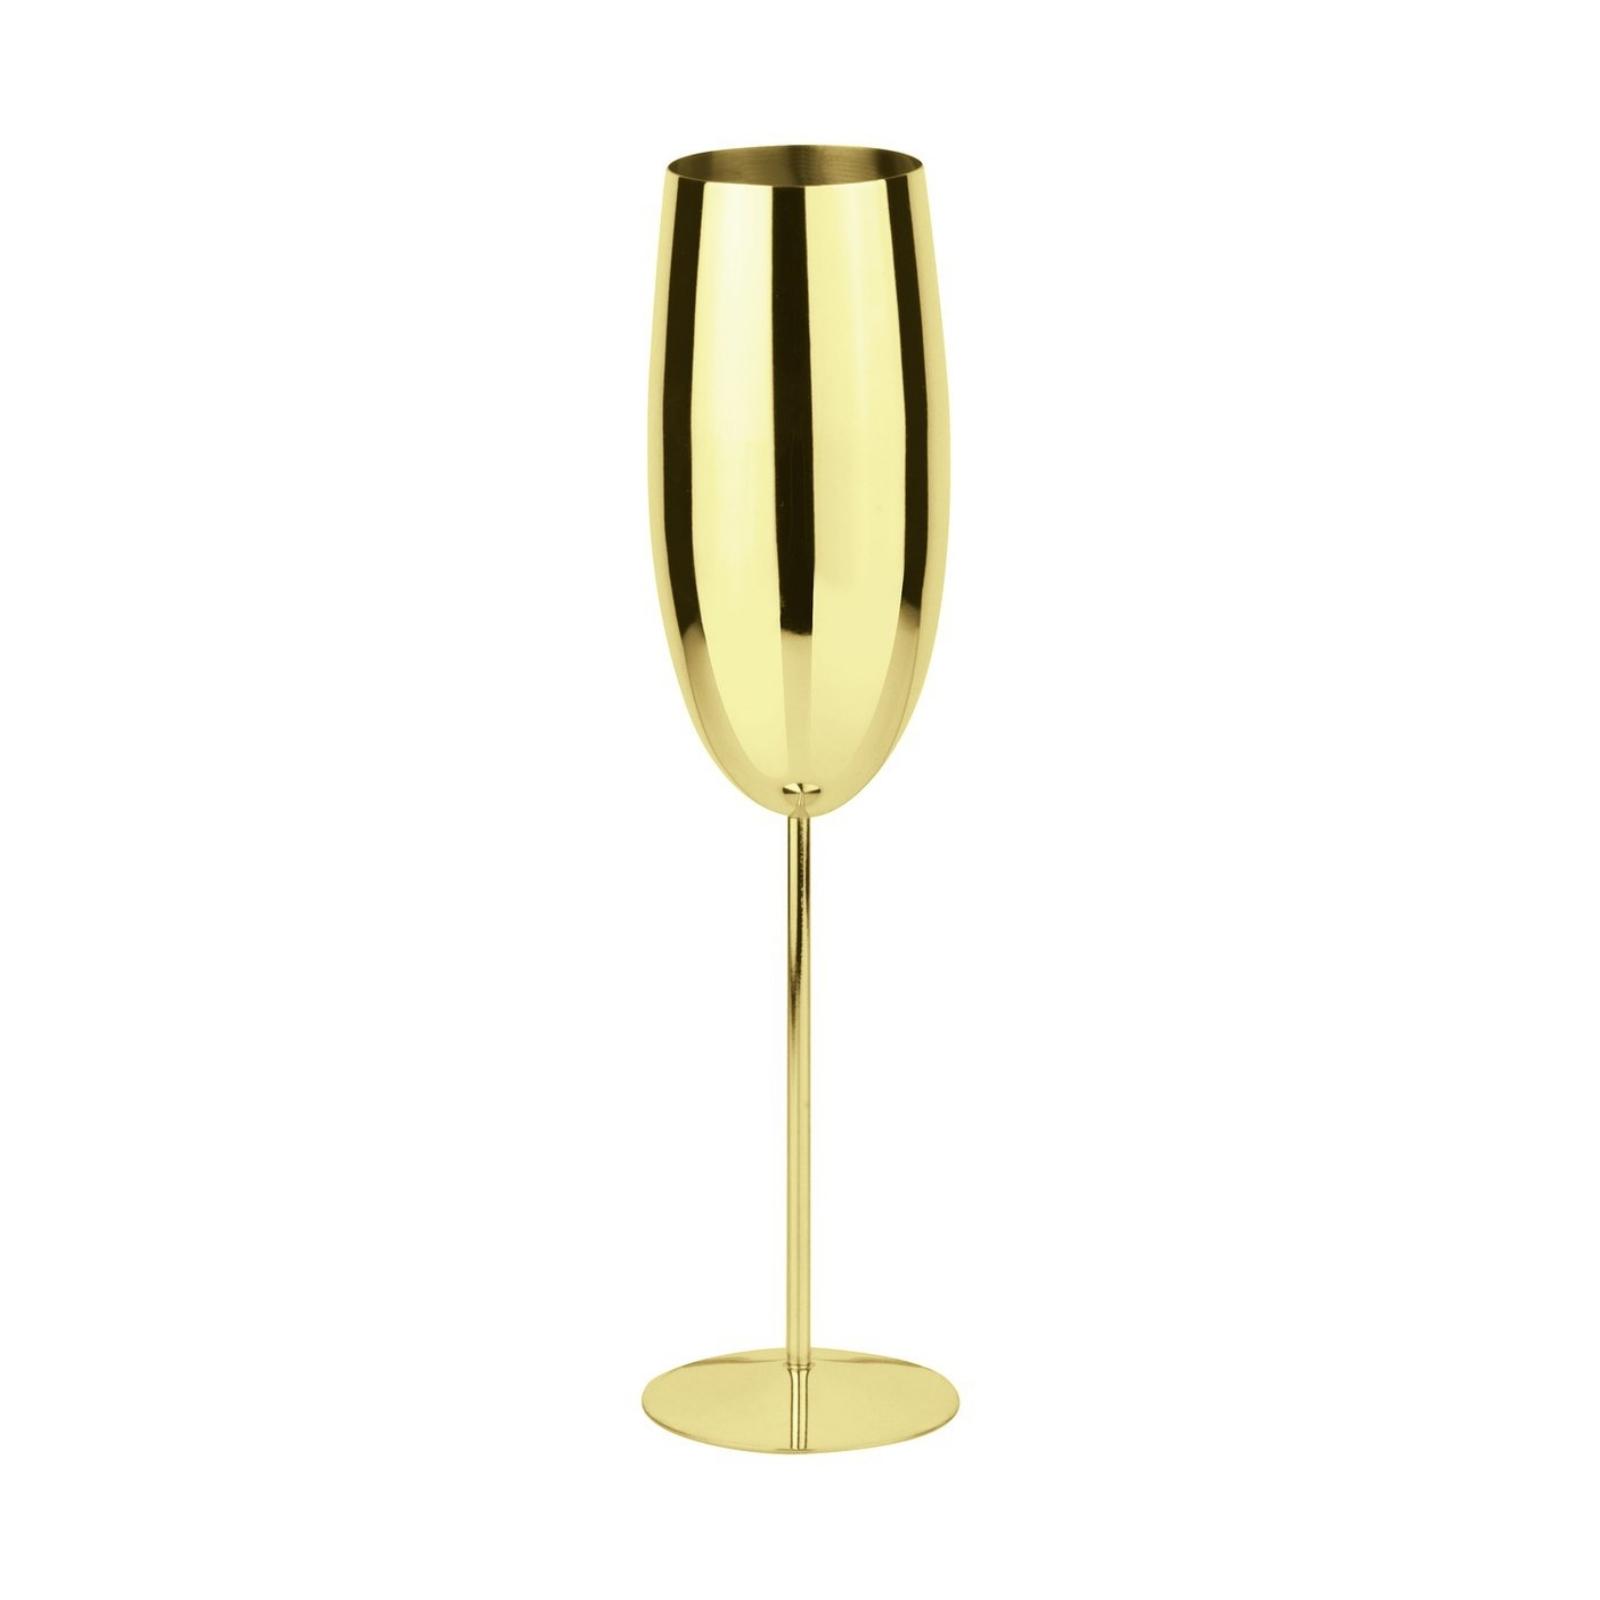 Champagne goblet 5 cm gold Sambonet